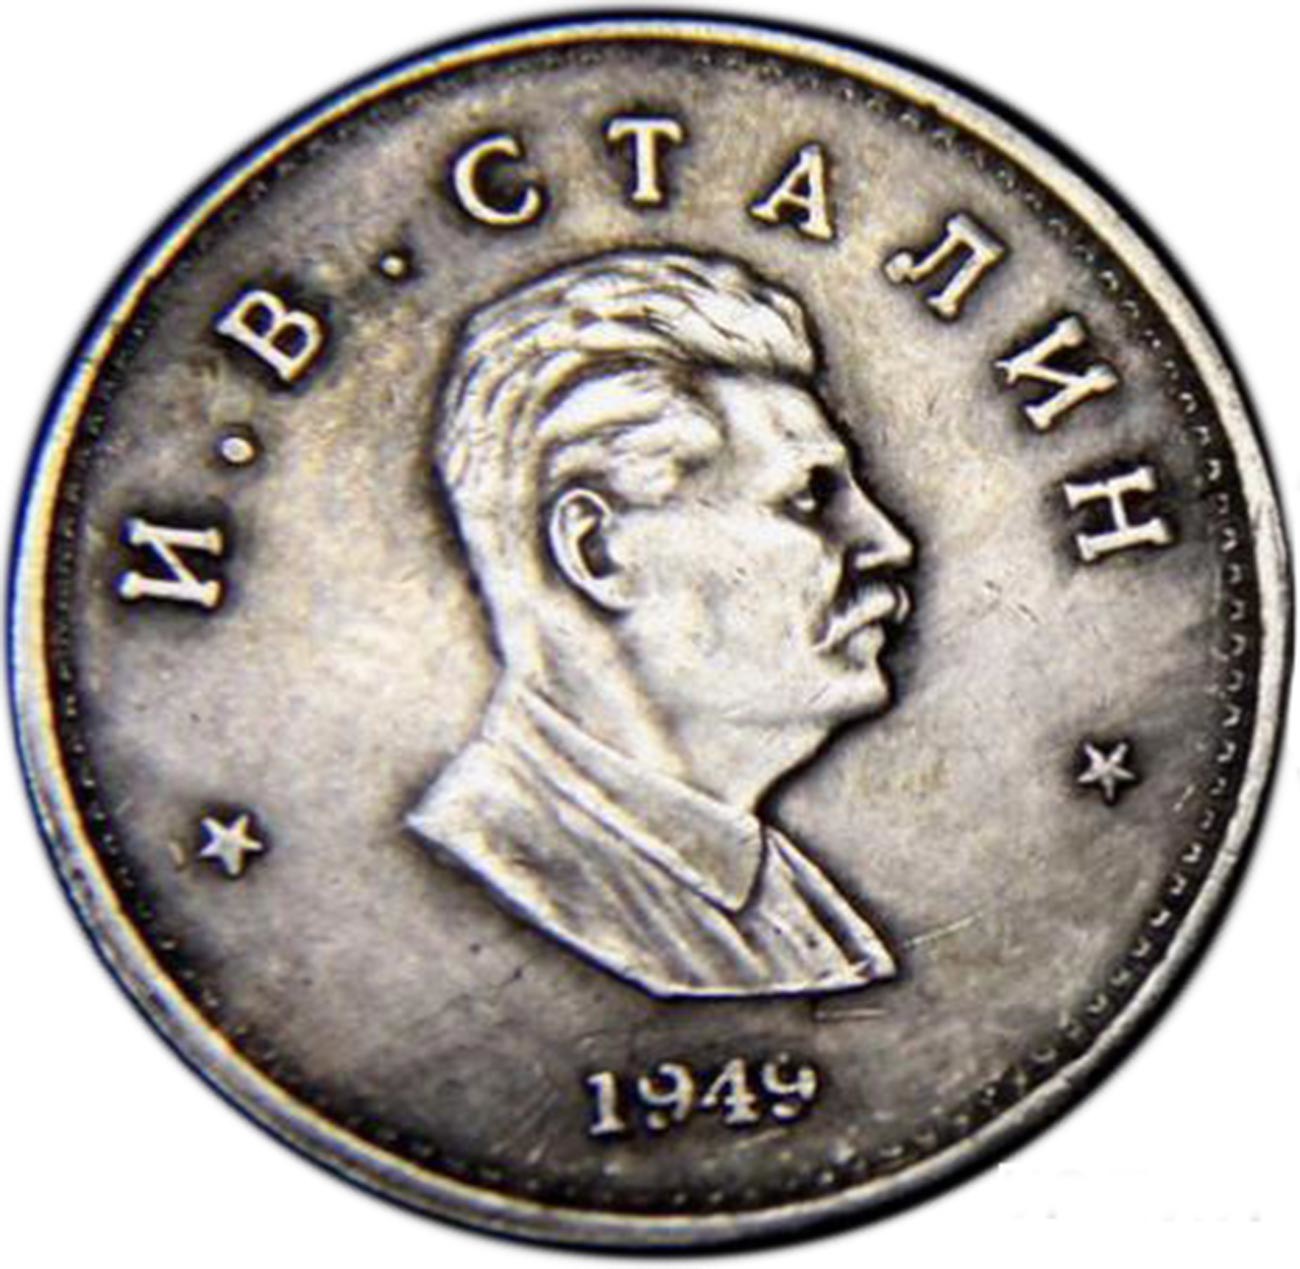 Pièce de monnaie, 1949
